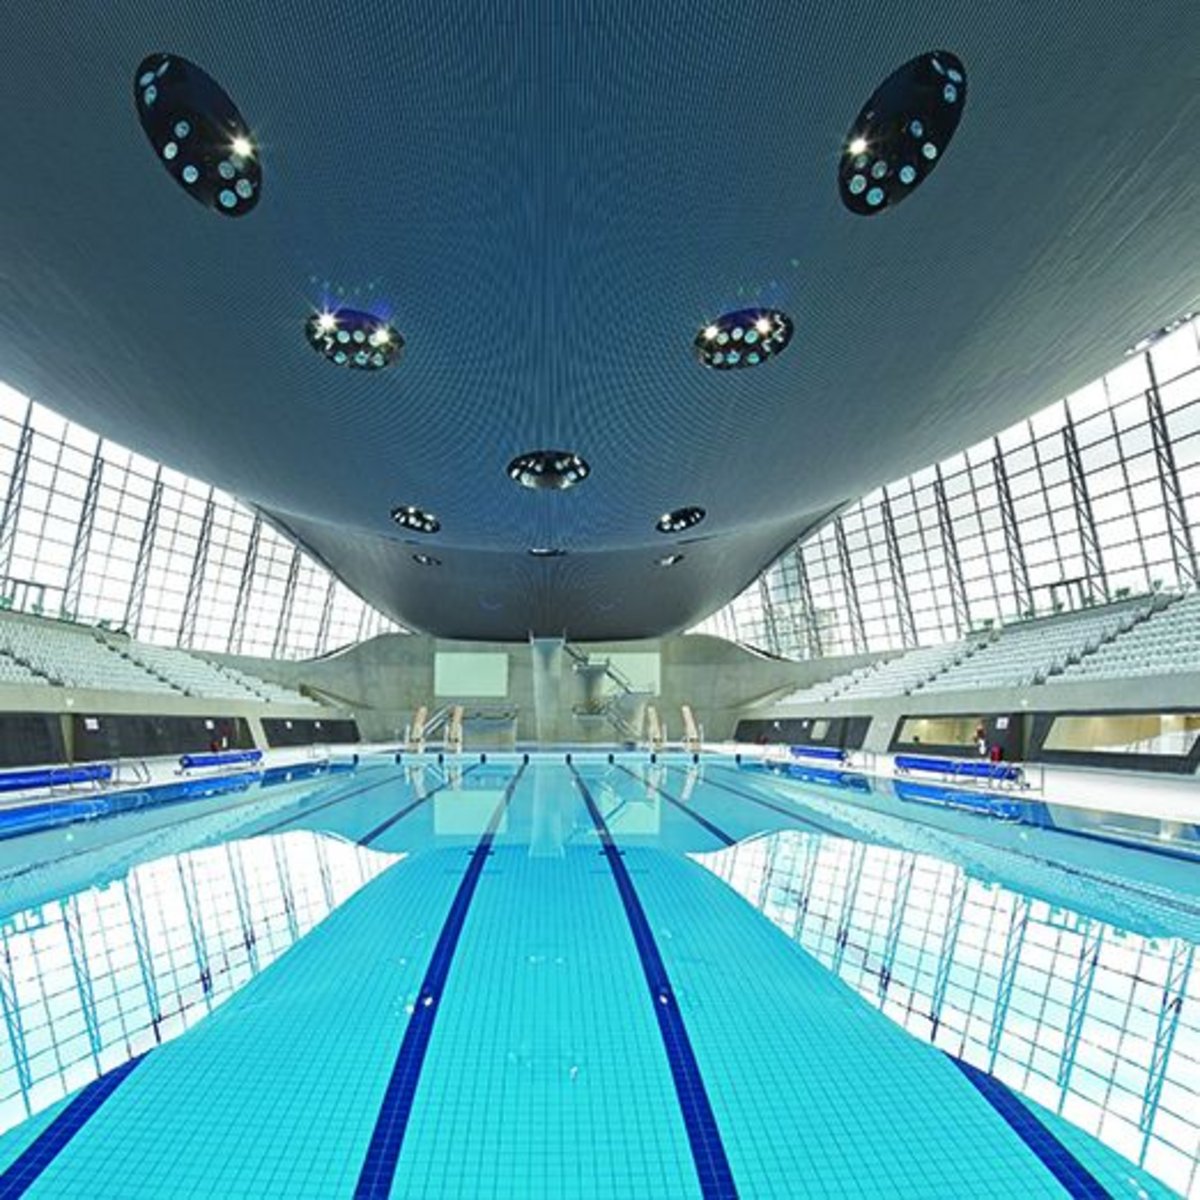 Laje Nervurada pelo Mundo: London Aquatics Centre - Atex